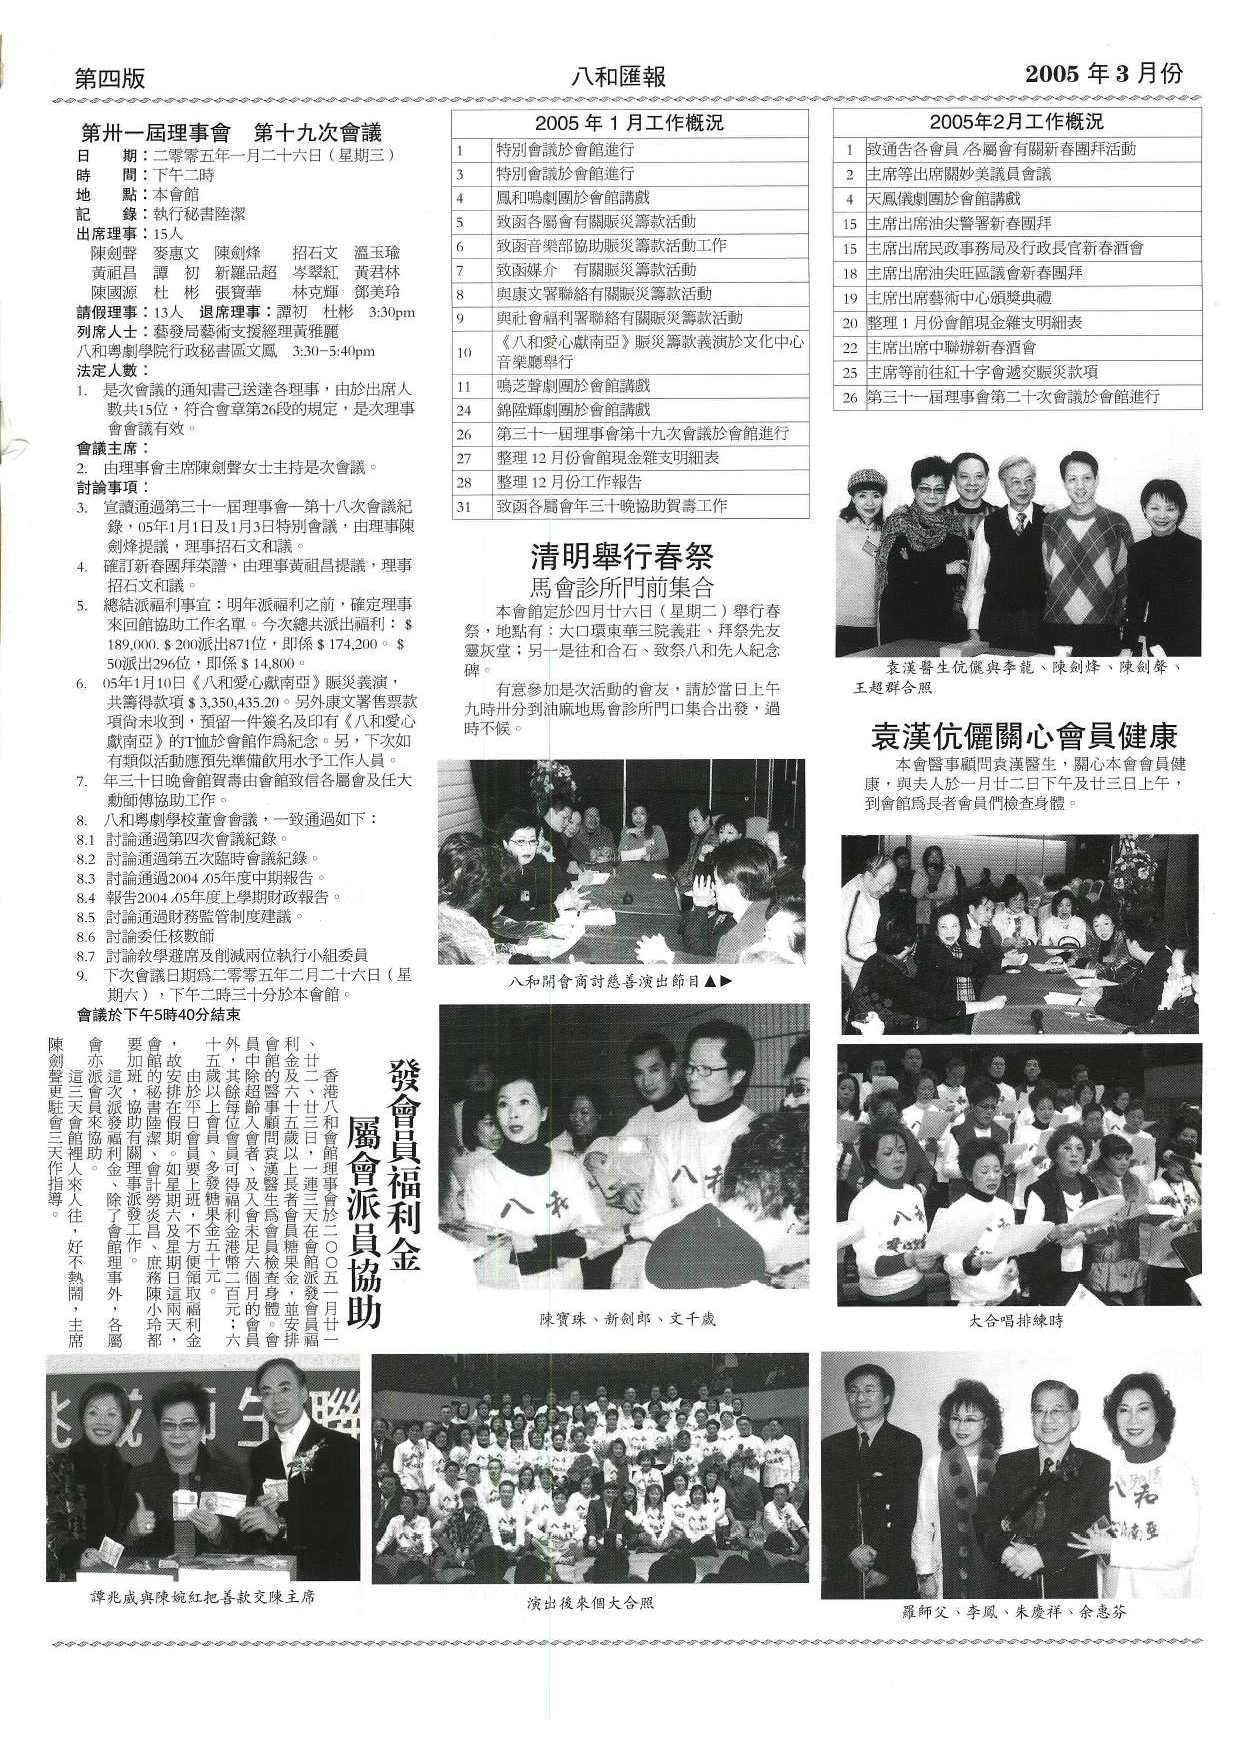 香港八和會館第三十一屆理事會第十九會議議程及辦公室報告（2005年1月至2月） | 清明舉行春祭 | 發會員福利金 屬會派員協助 | 袁漢伉儷關心會員健康